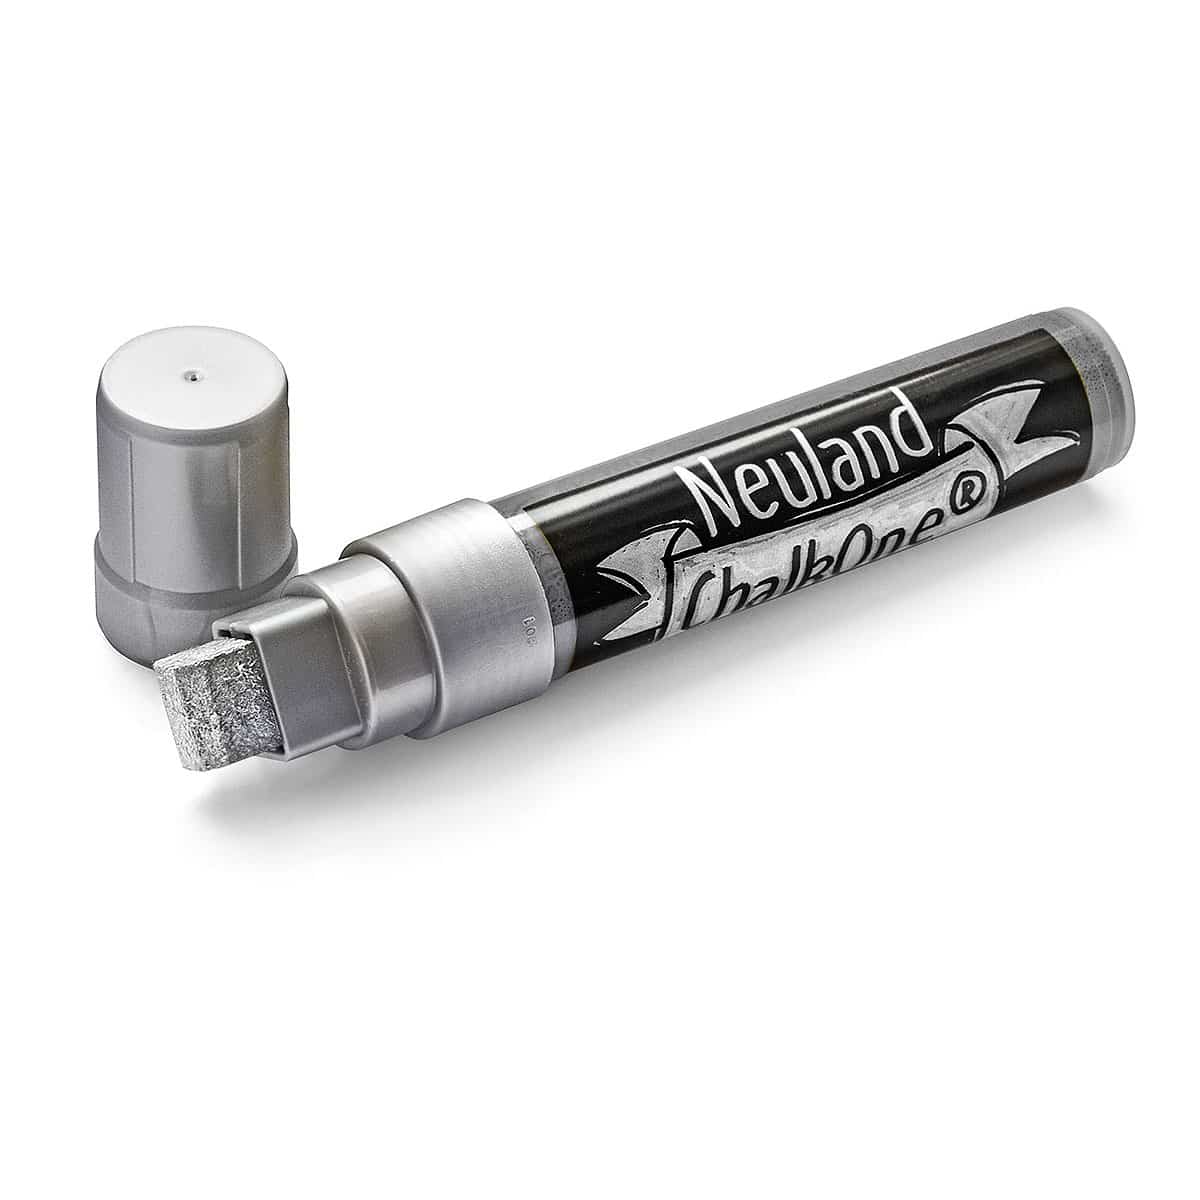 Neuland ChalkOne®, wigpunt 5-15 mm, enkele kleuren- c551 silber